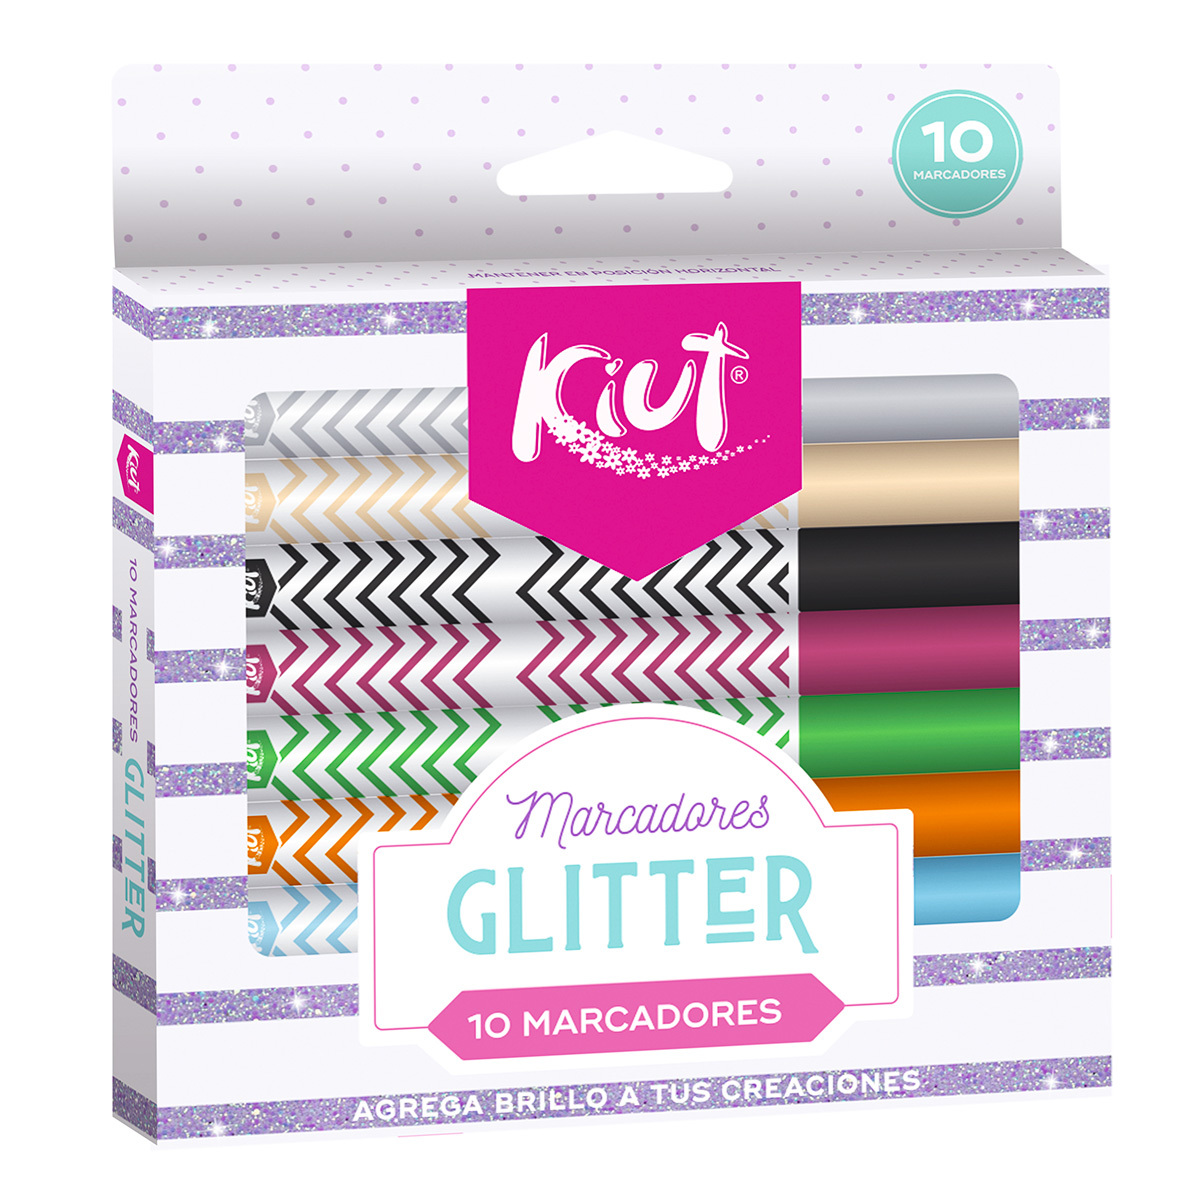 Marcadores con Glitter Kiut / 10 piezas